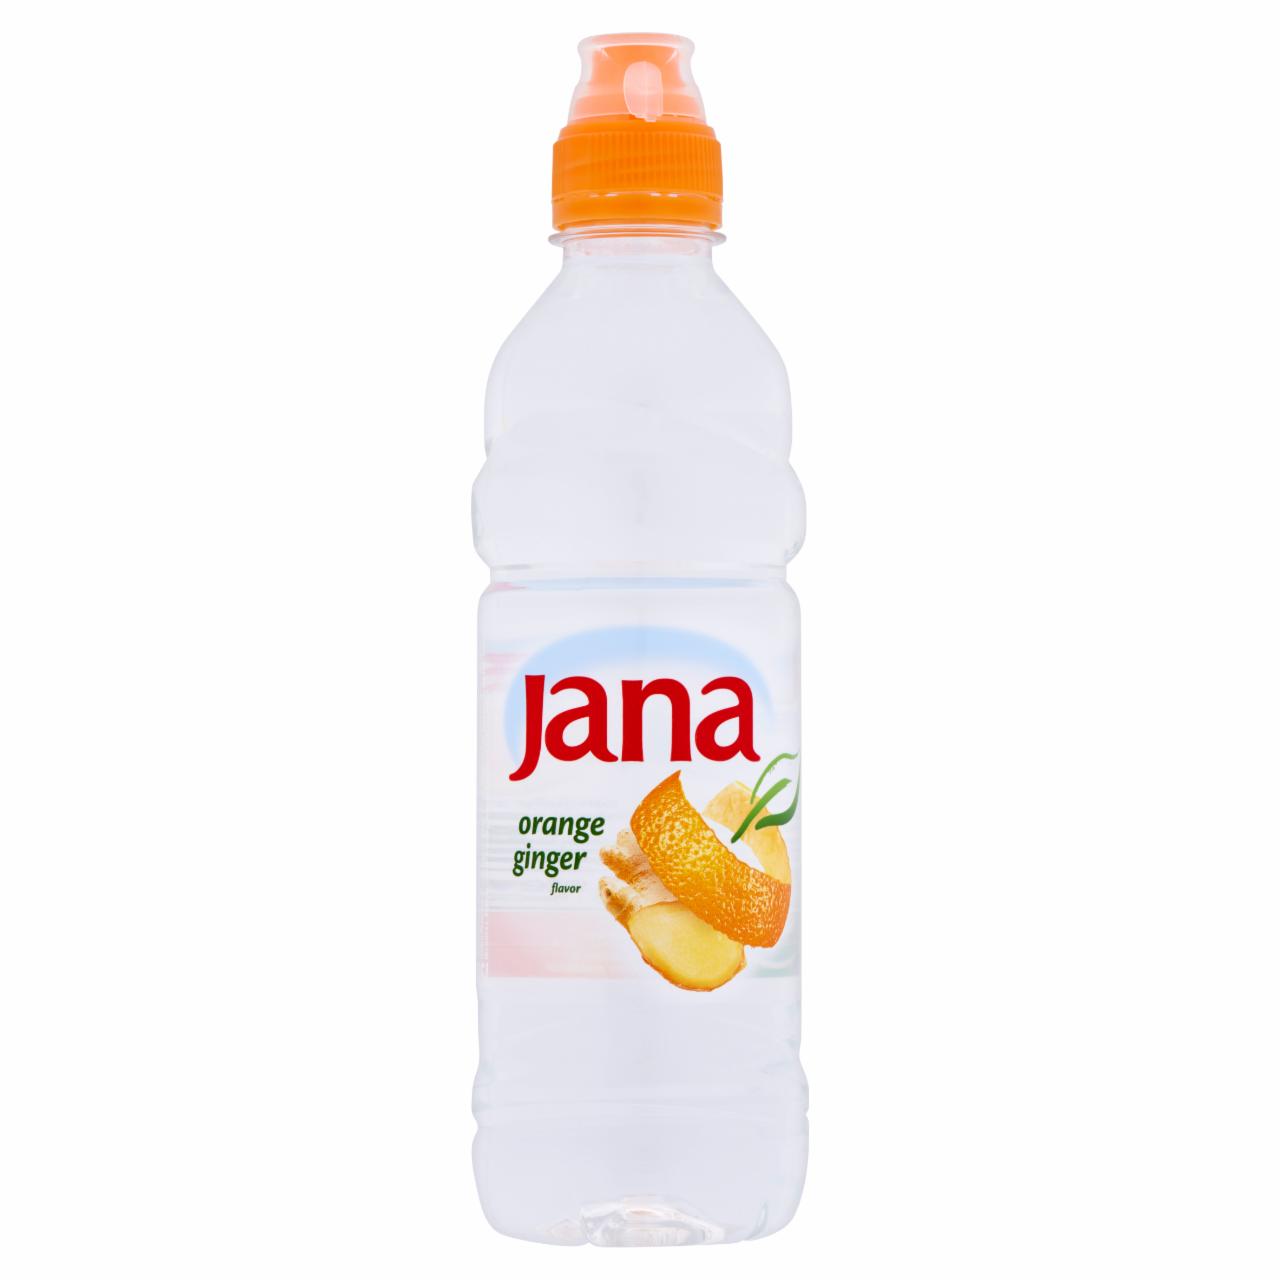 Képek - Jana narancs és gyömbér ízű energiaszegény szénsavmentes üdítőital cukorral és édesítőszerrel 0,5 l